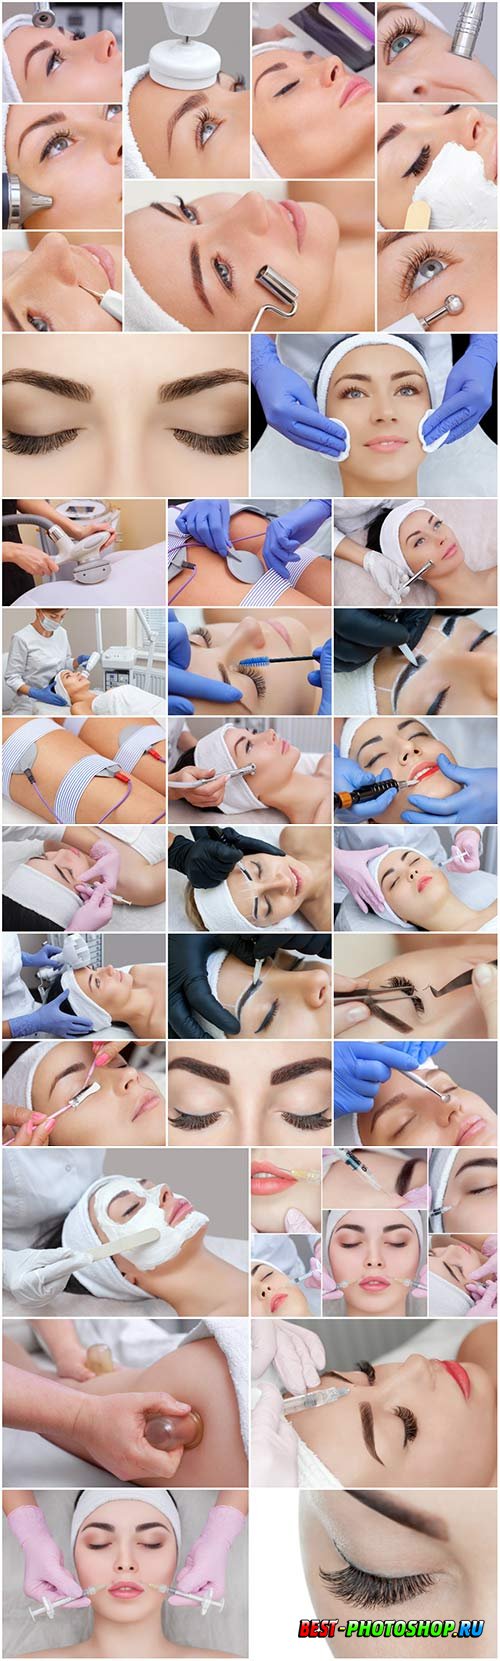 Girl on cosmetic procedures stock photo